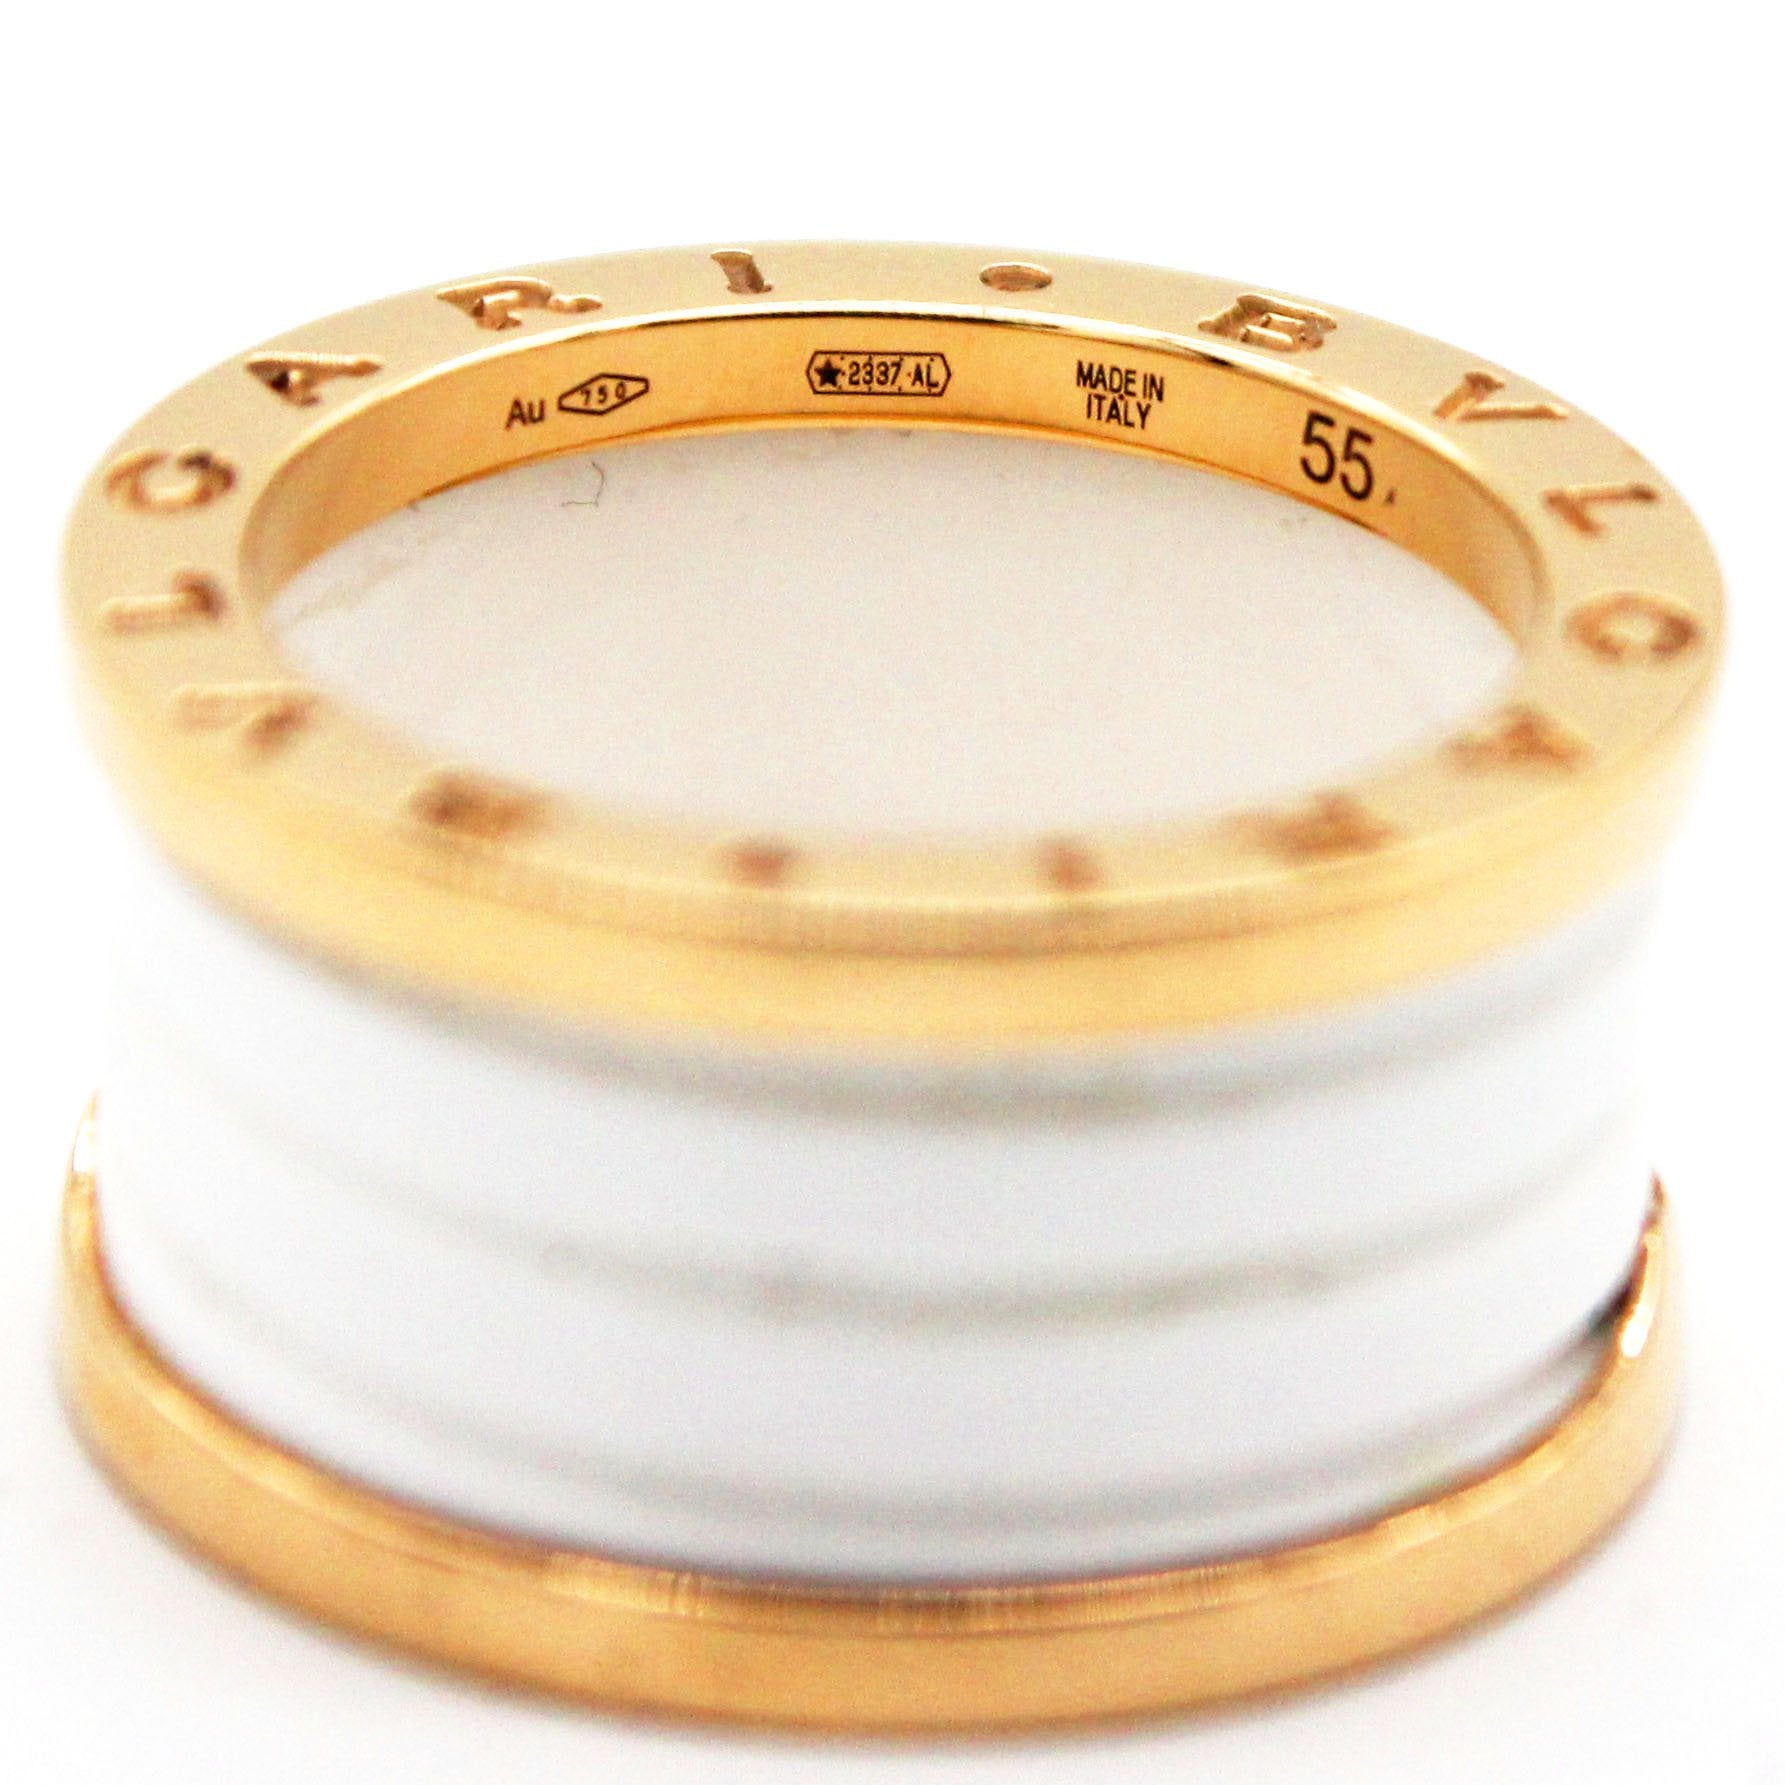 B.Zero1 Ring White Yellow Gold